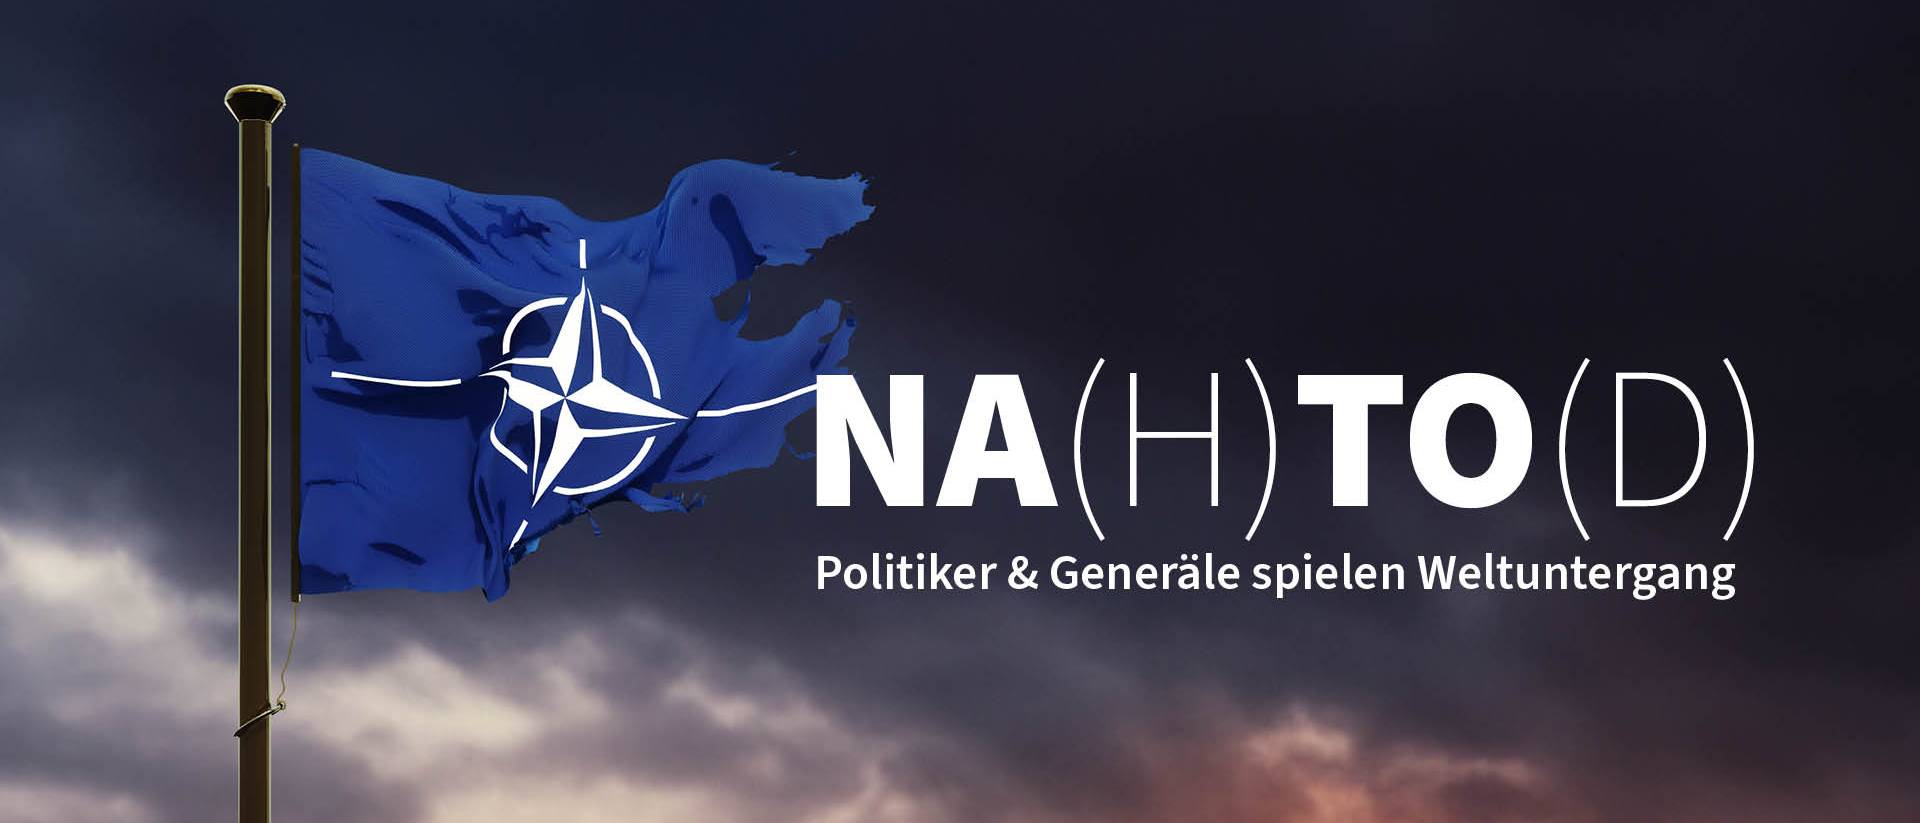 Kaputte NATO Flagge